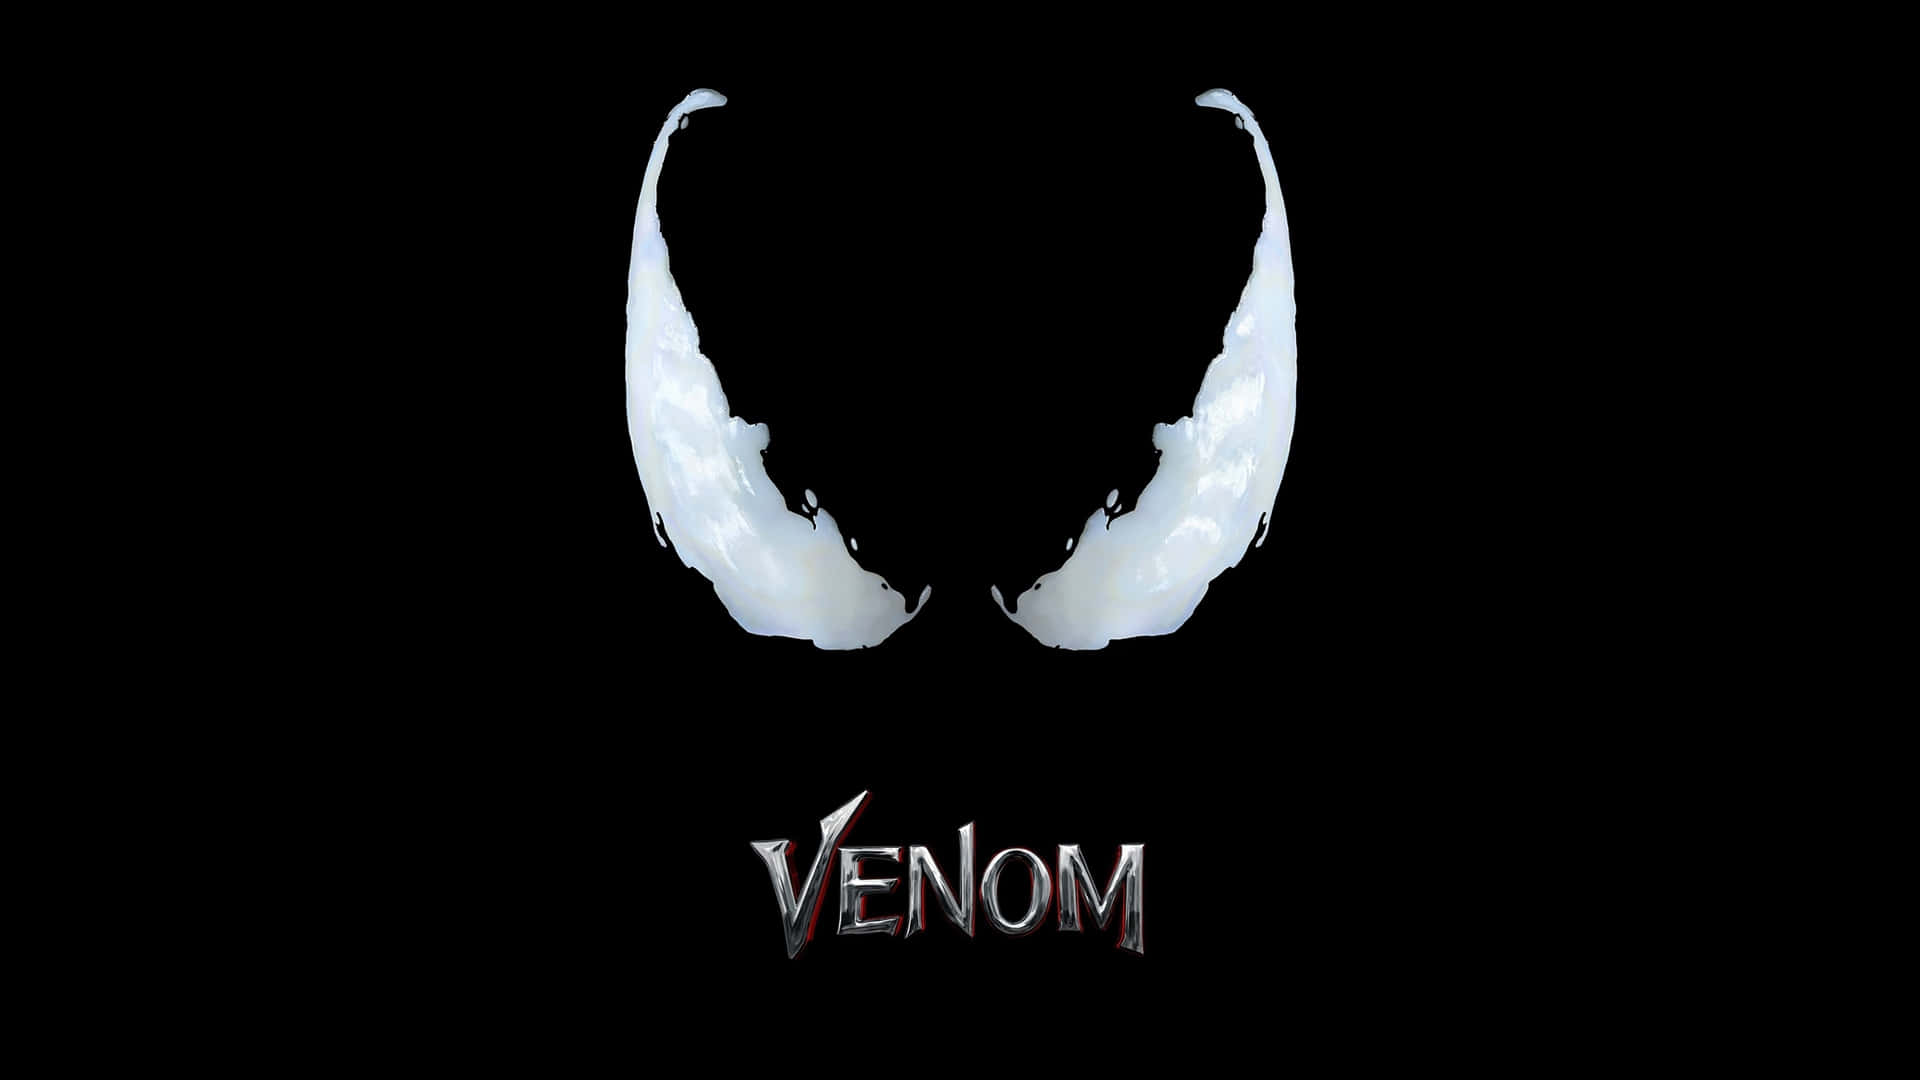 Skræm dine fjender med Venoms abstrakte kunstværk. Wallpaper